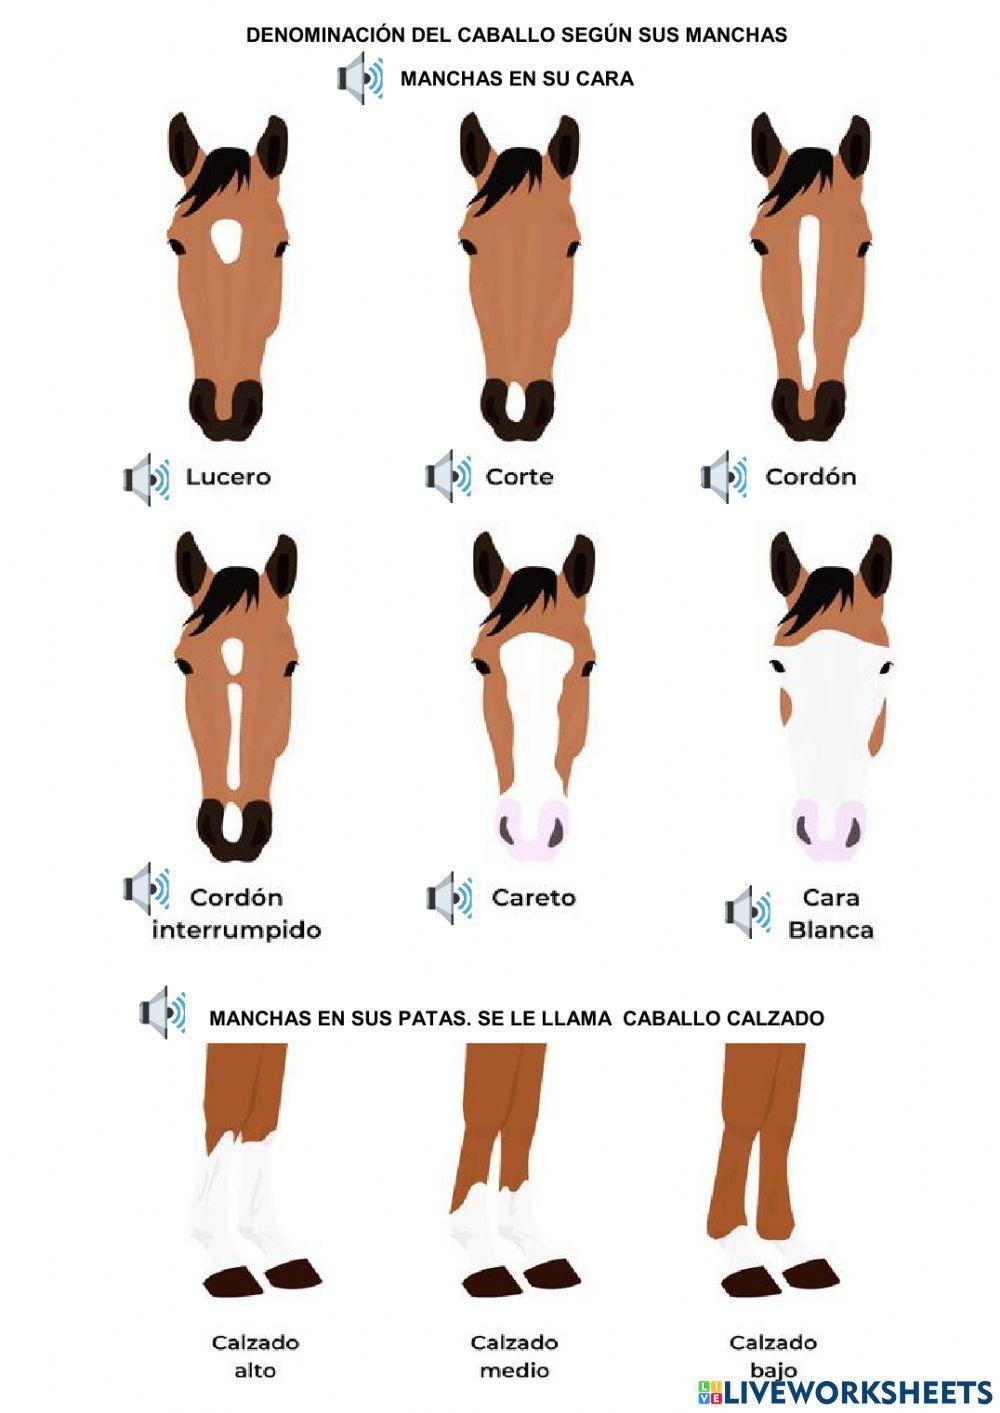 Tipos de caballos según sus manchas